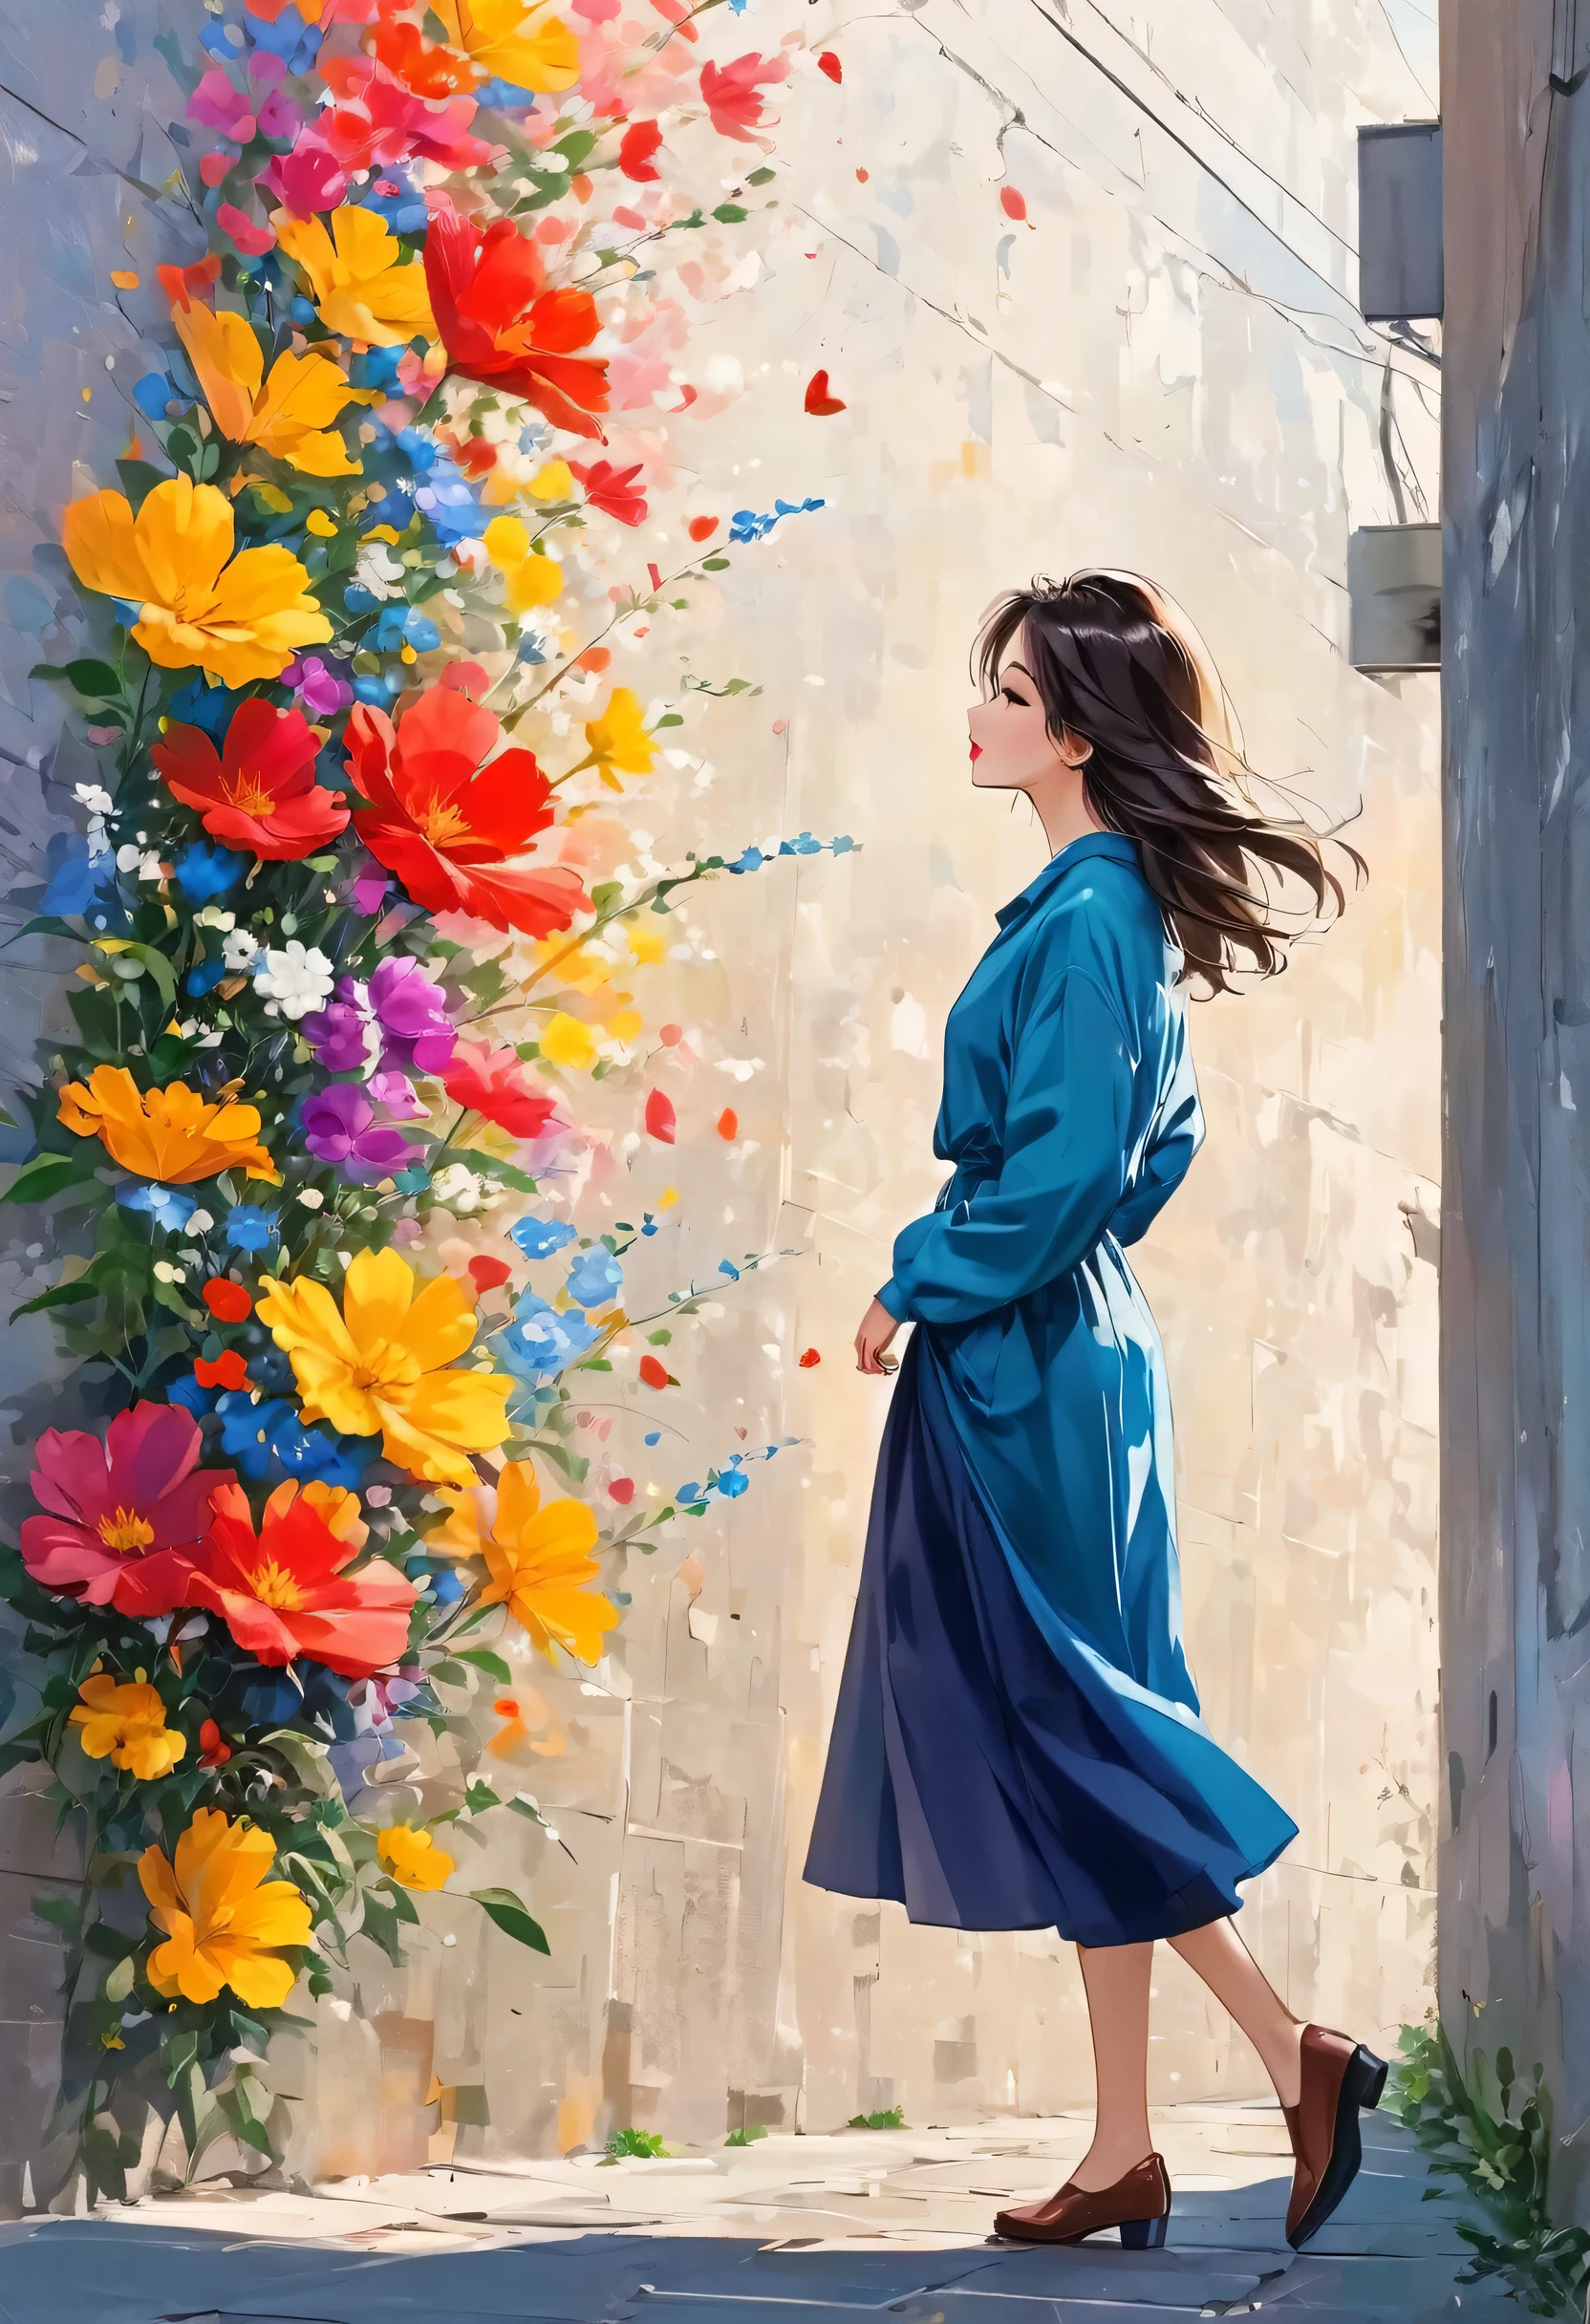 Watase Seizo-Stil, Vor einer hohen Mauer stehen，Einfache Zeileninitialisierung，abstrakte Kunst，städtischer Hintergrund, (((Das schönste Mädchen))), Lippen in der Liebe, gehen, farbenfrohe Blumen